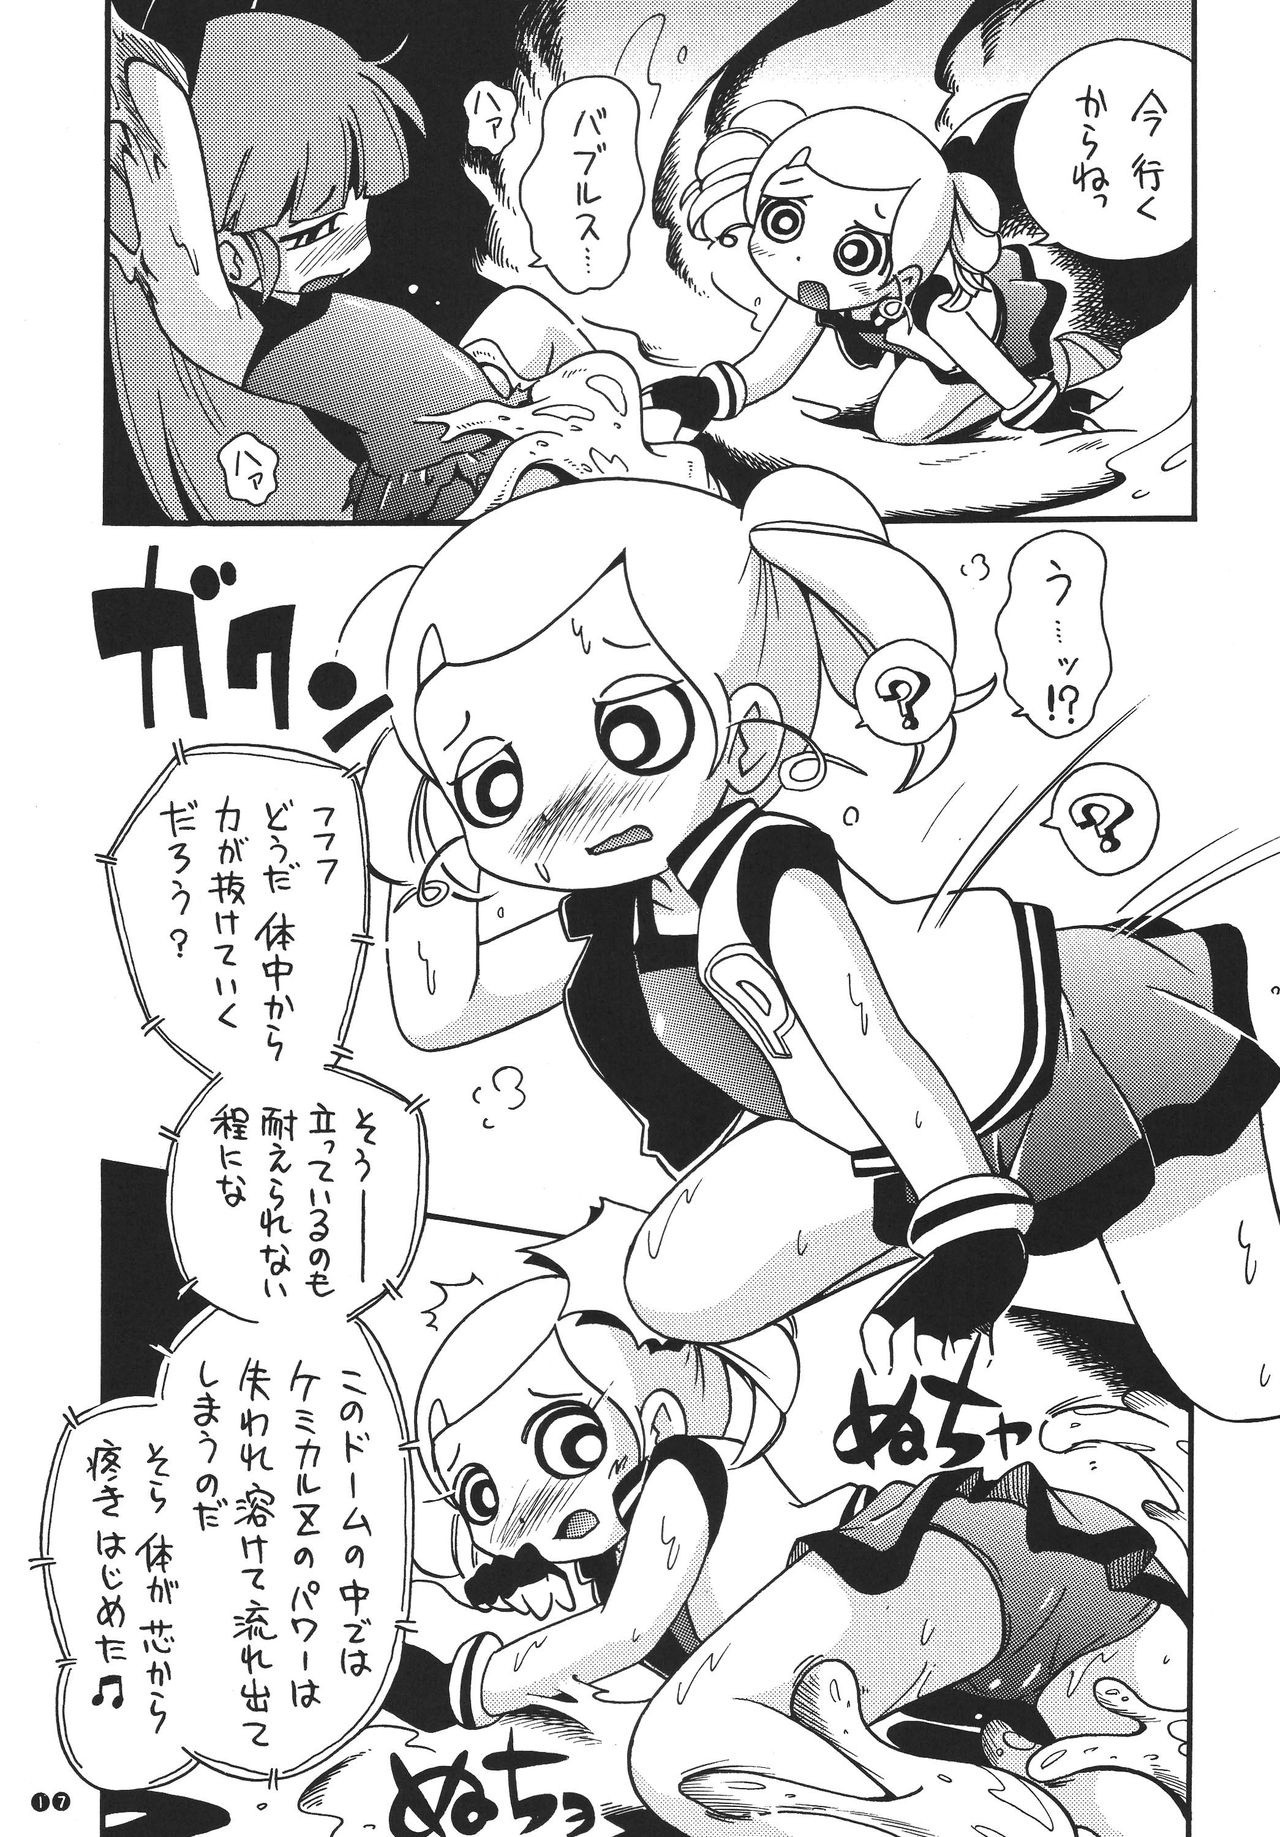 Demashita Power Puff Girls Z hentai manga picture 14